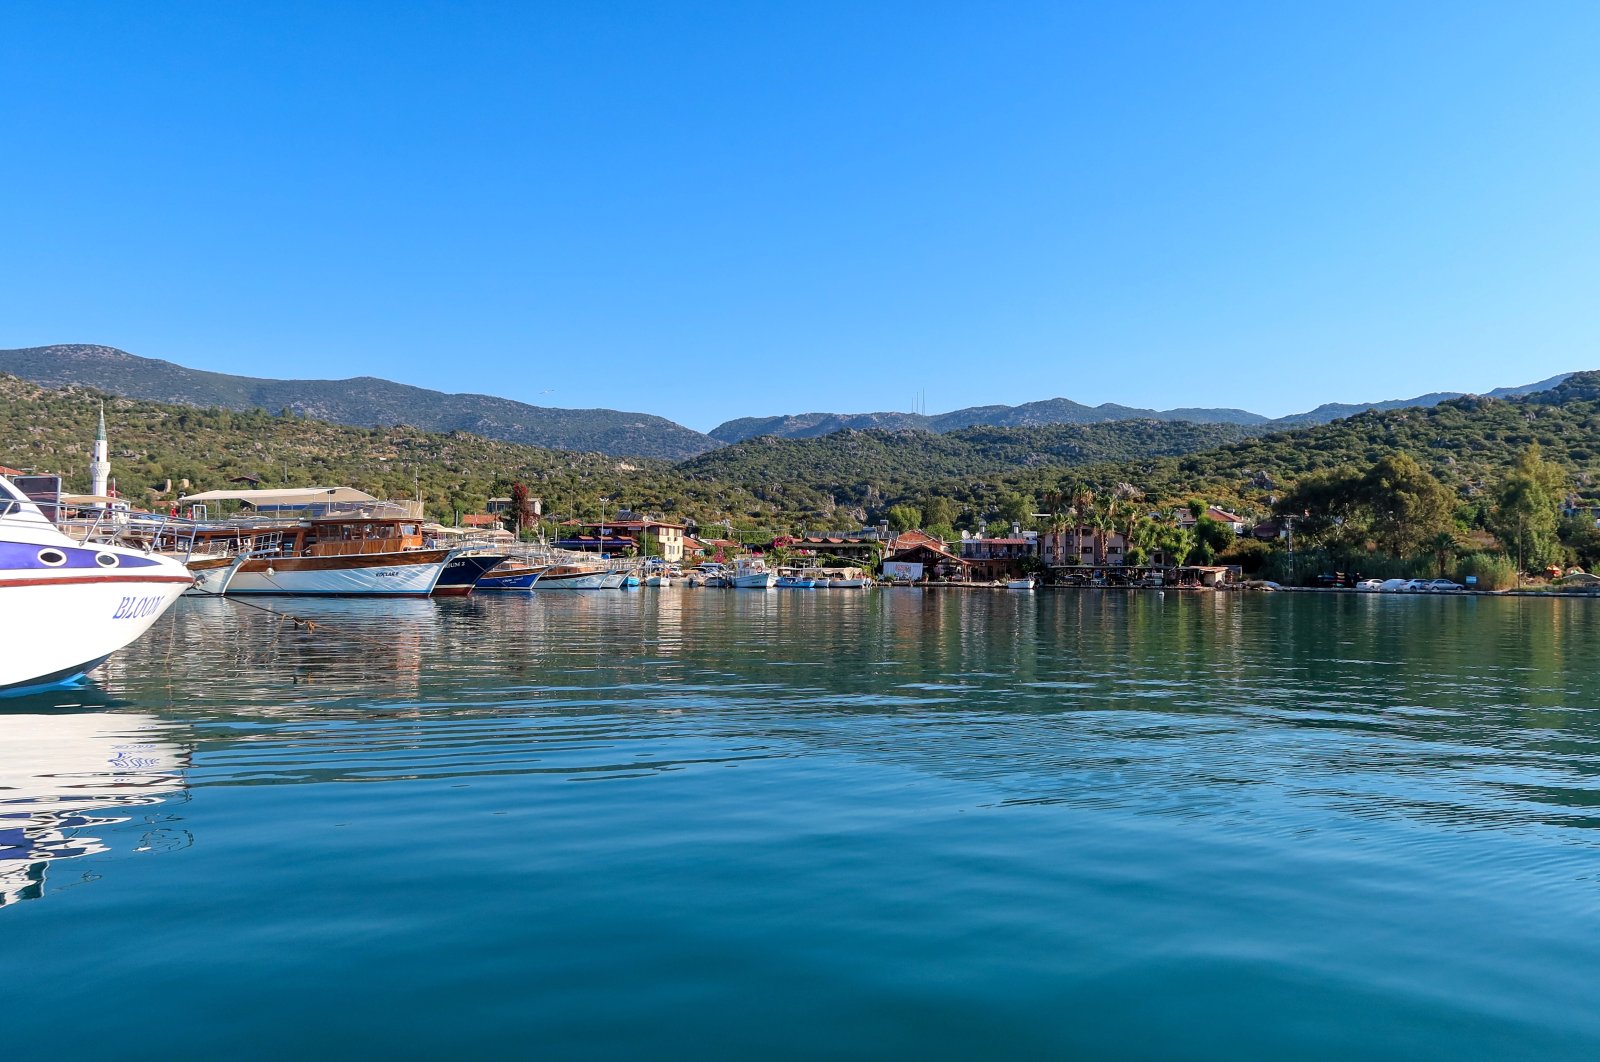 Mengikuti jejak kota yang tenggelam: Di pulau Kekova Antalya